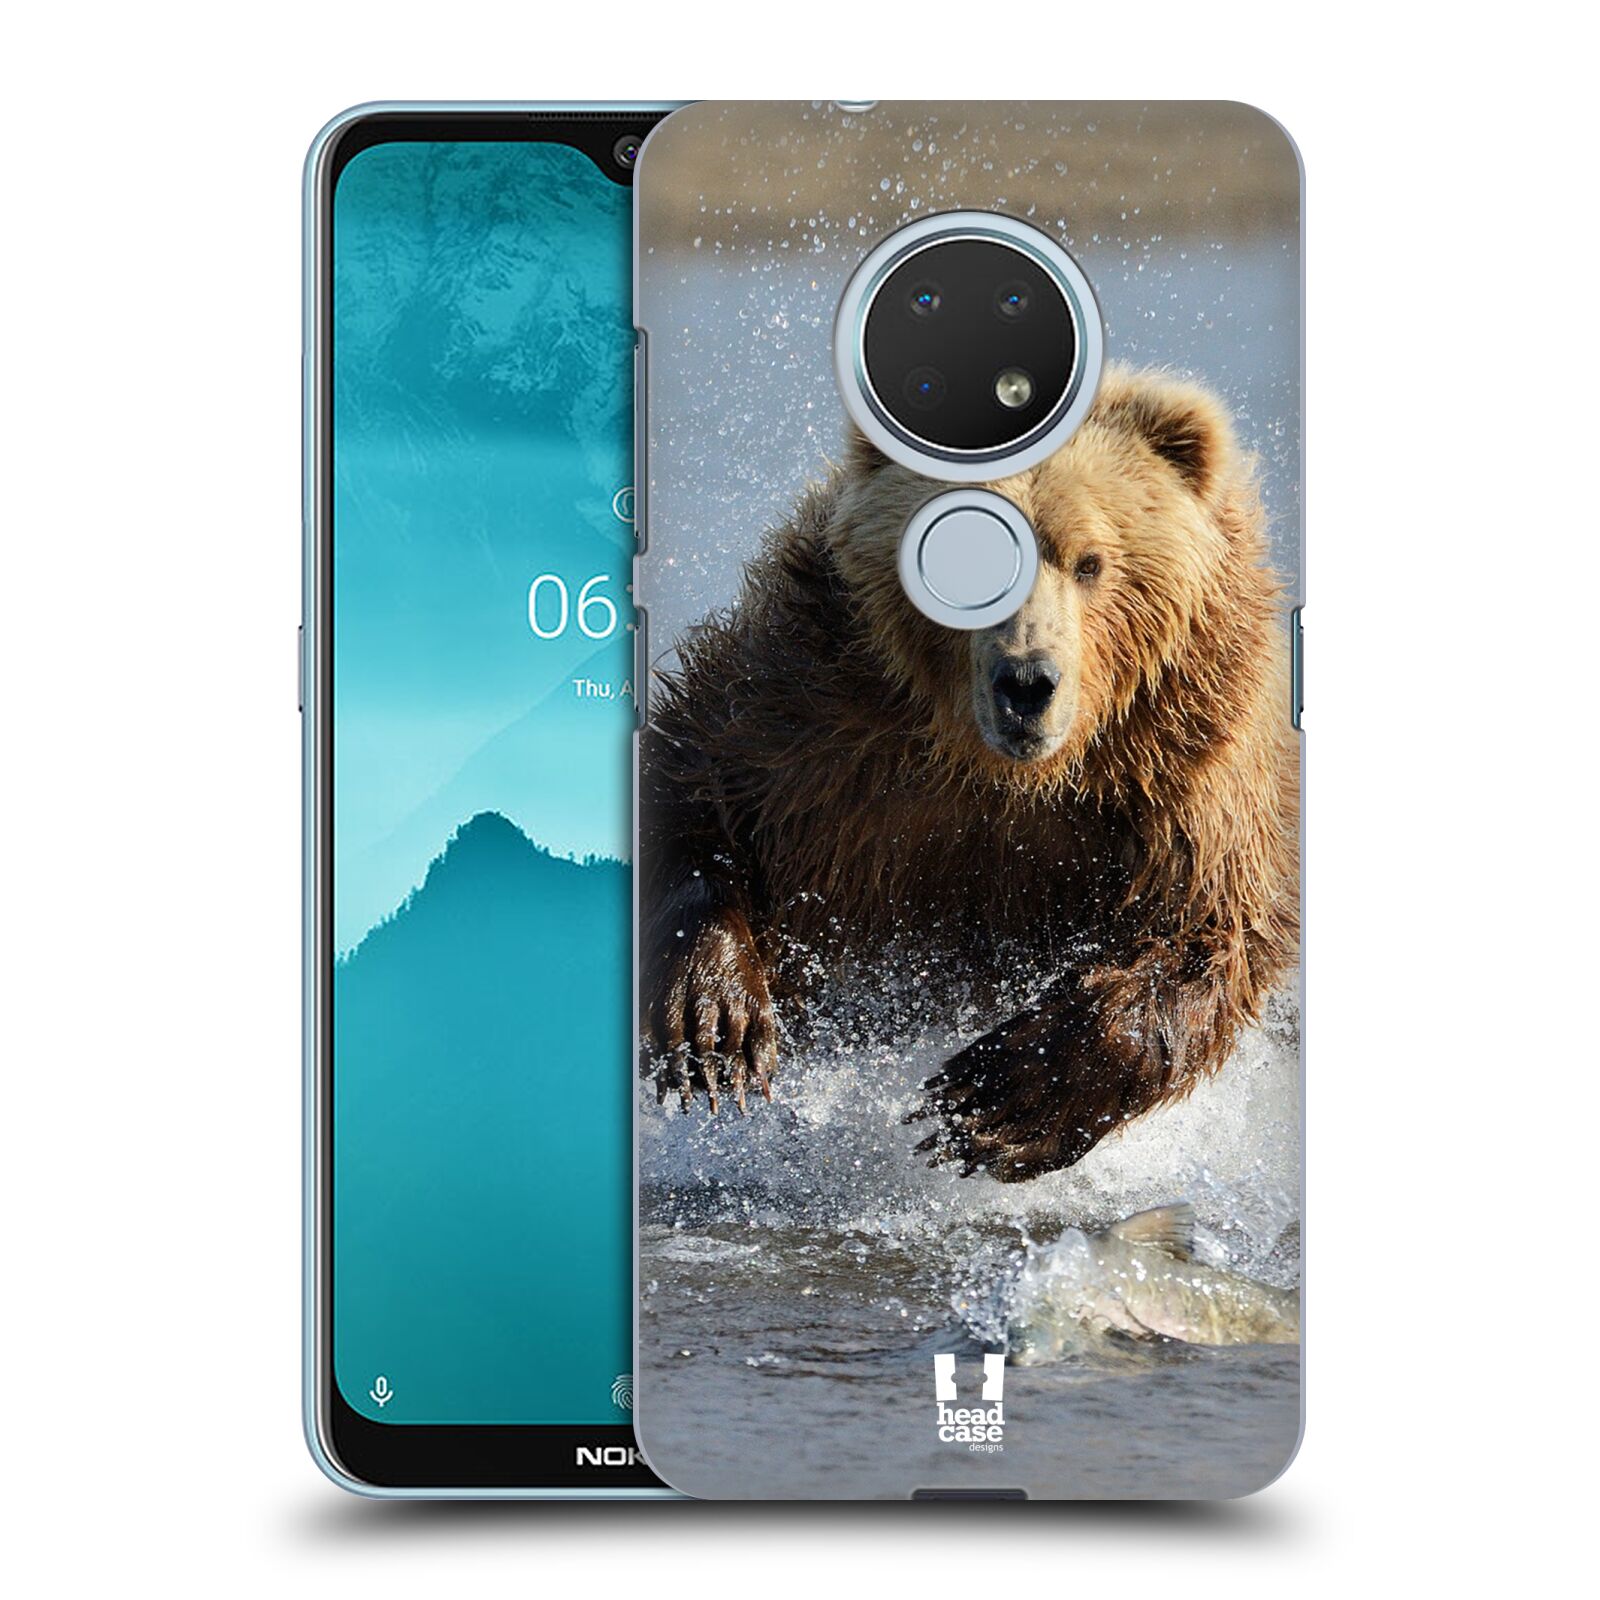 Pouzdro na mobil Nokia 6.2 - HEAD CASE - vzor Divočina, Divoký život a zvířata foto MEDVĚD GRIZZLY HŇEDÁ